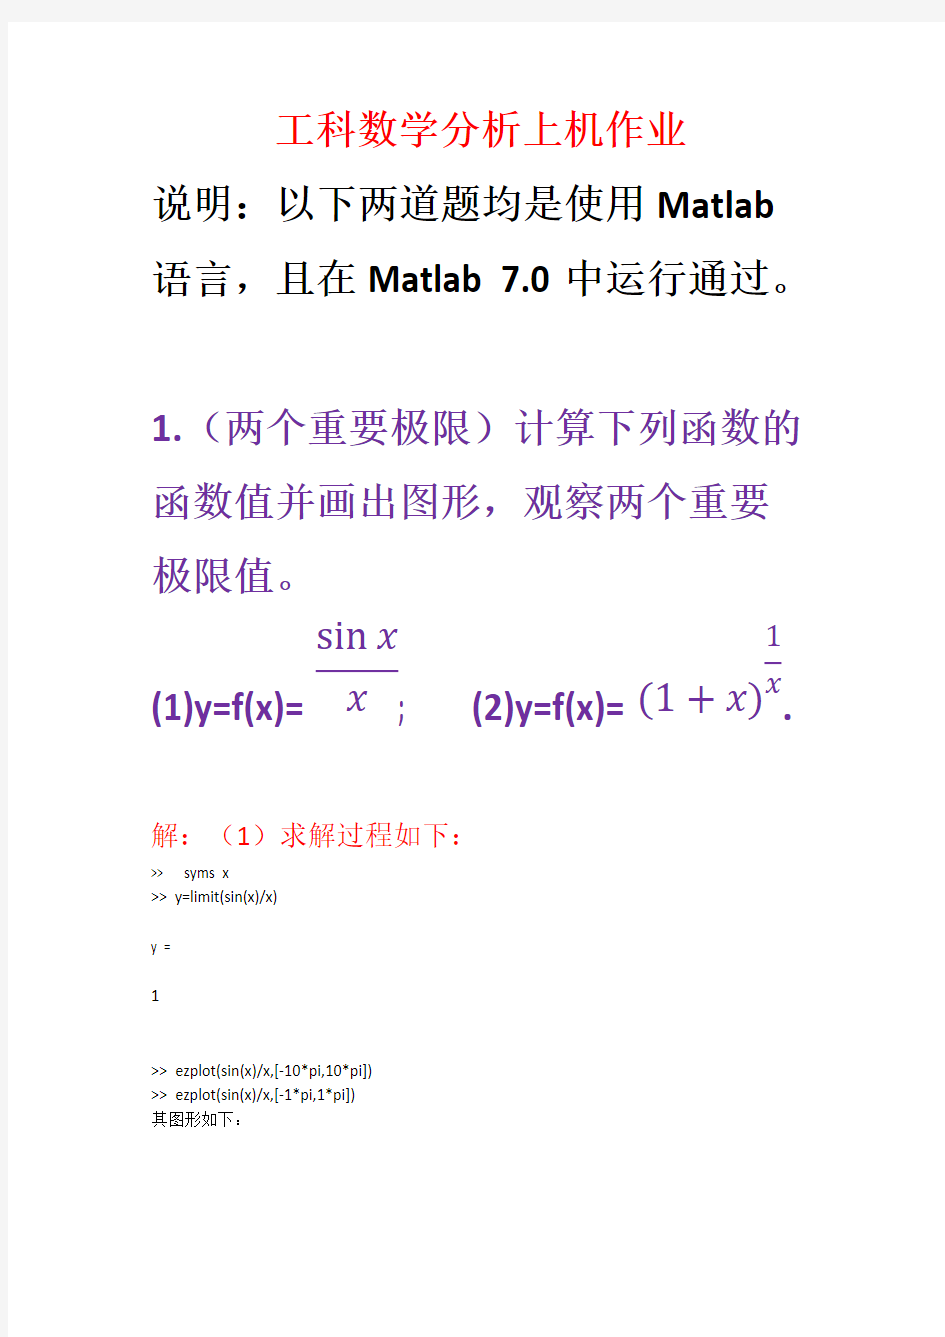 Removed_大连理工大学工科数学分析上机作业